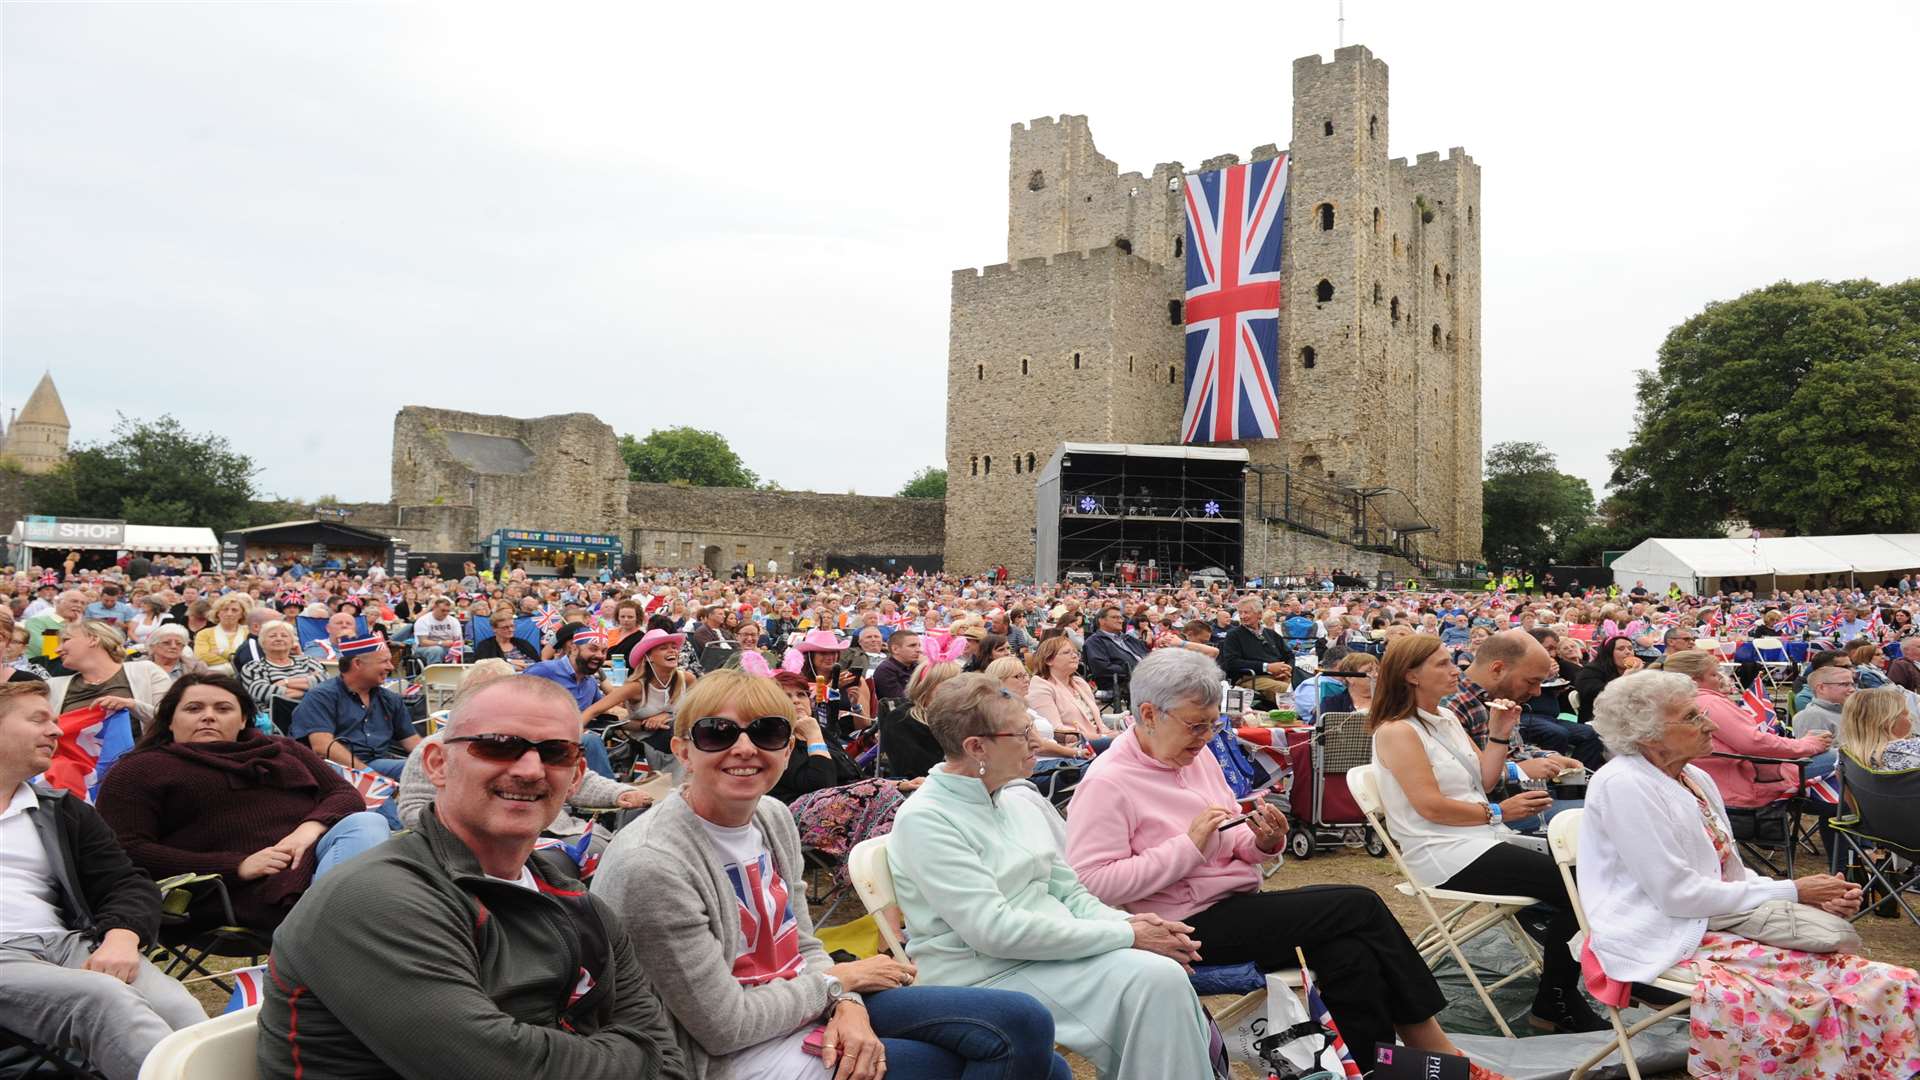 Rochester Castle Proms was the last of the Castle Concerts. Picture: Steve Crispe